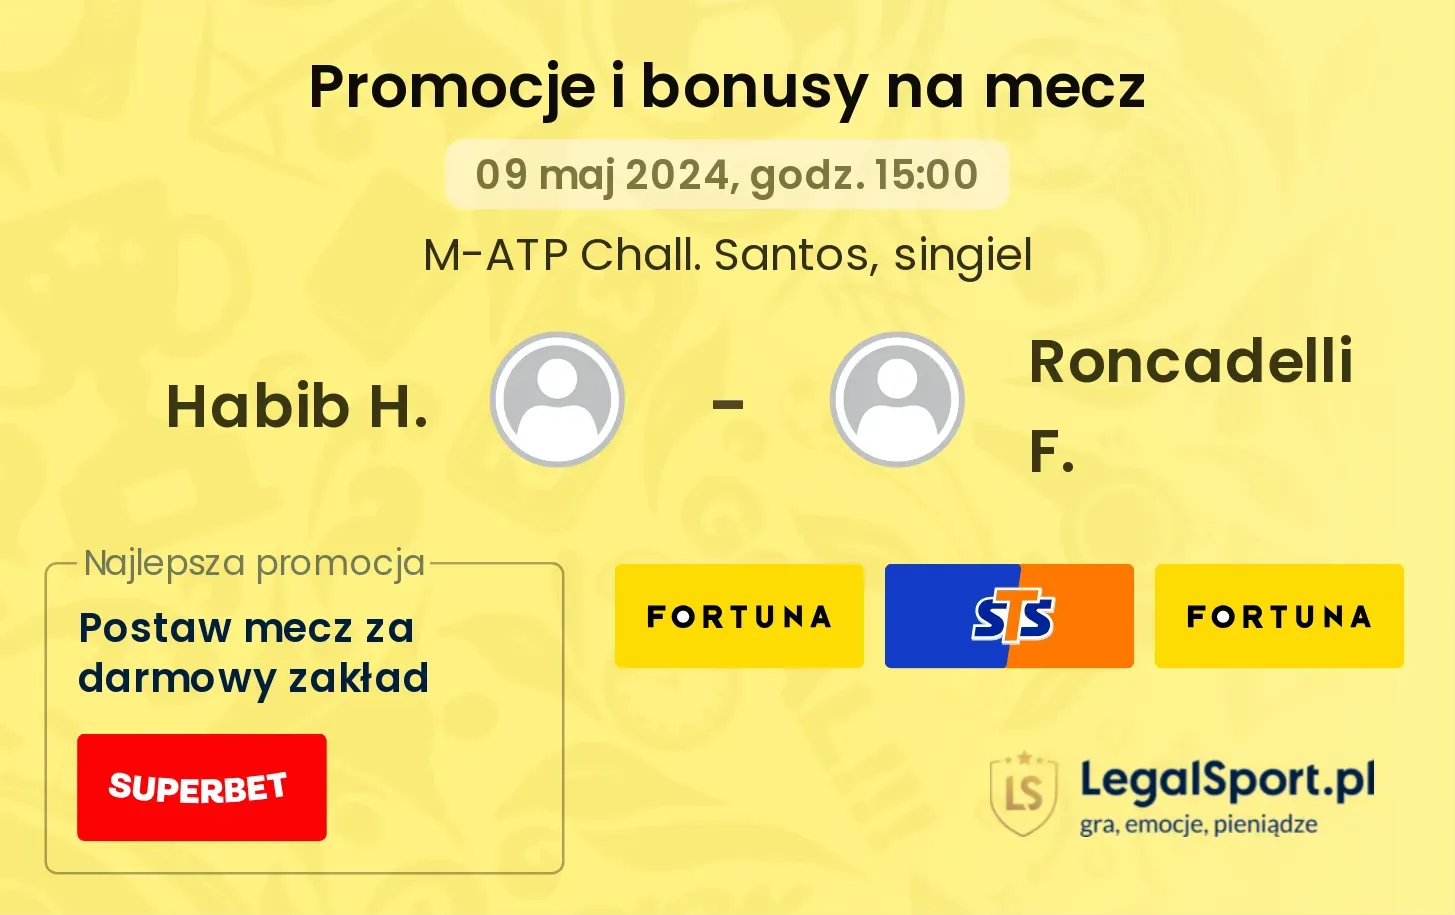 Habib H. - Roncadelli F. promocje bonusy na mecz